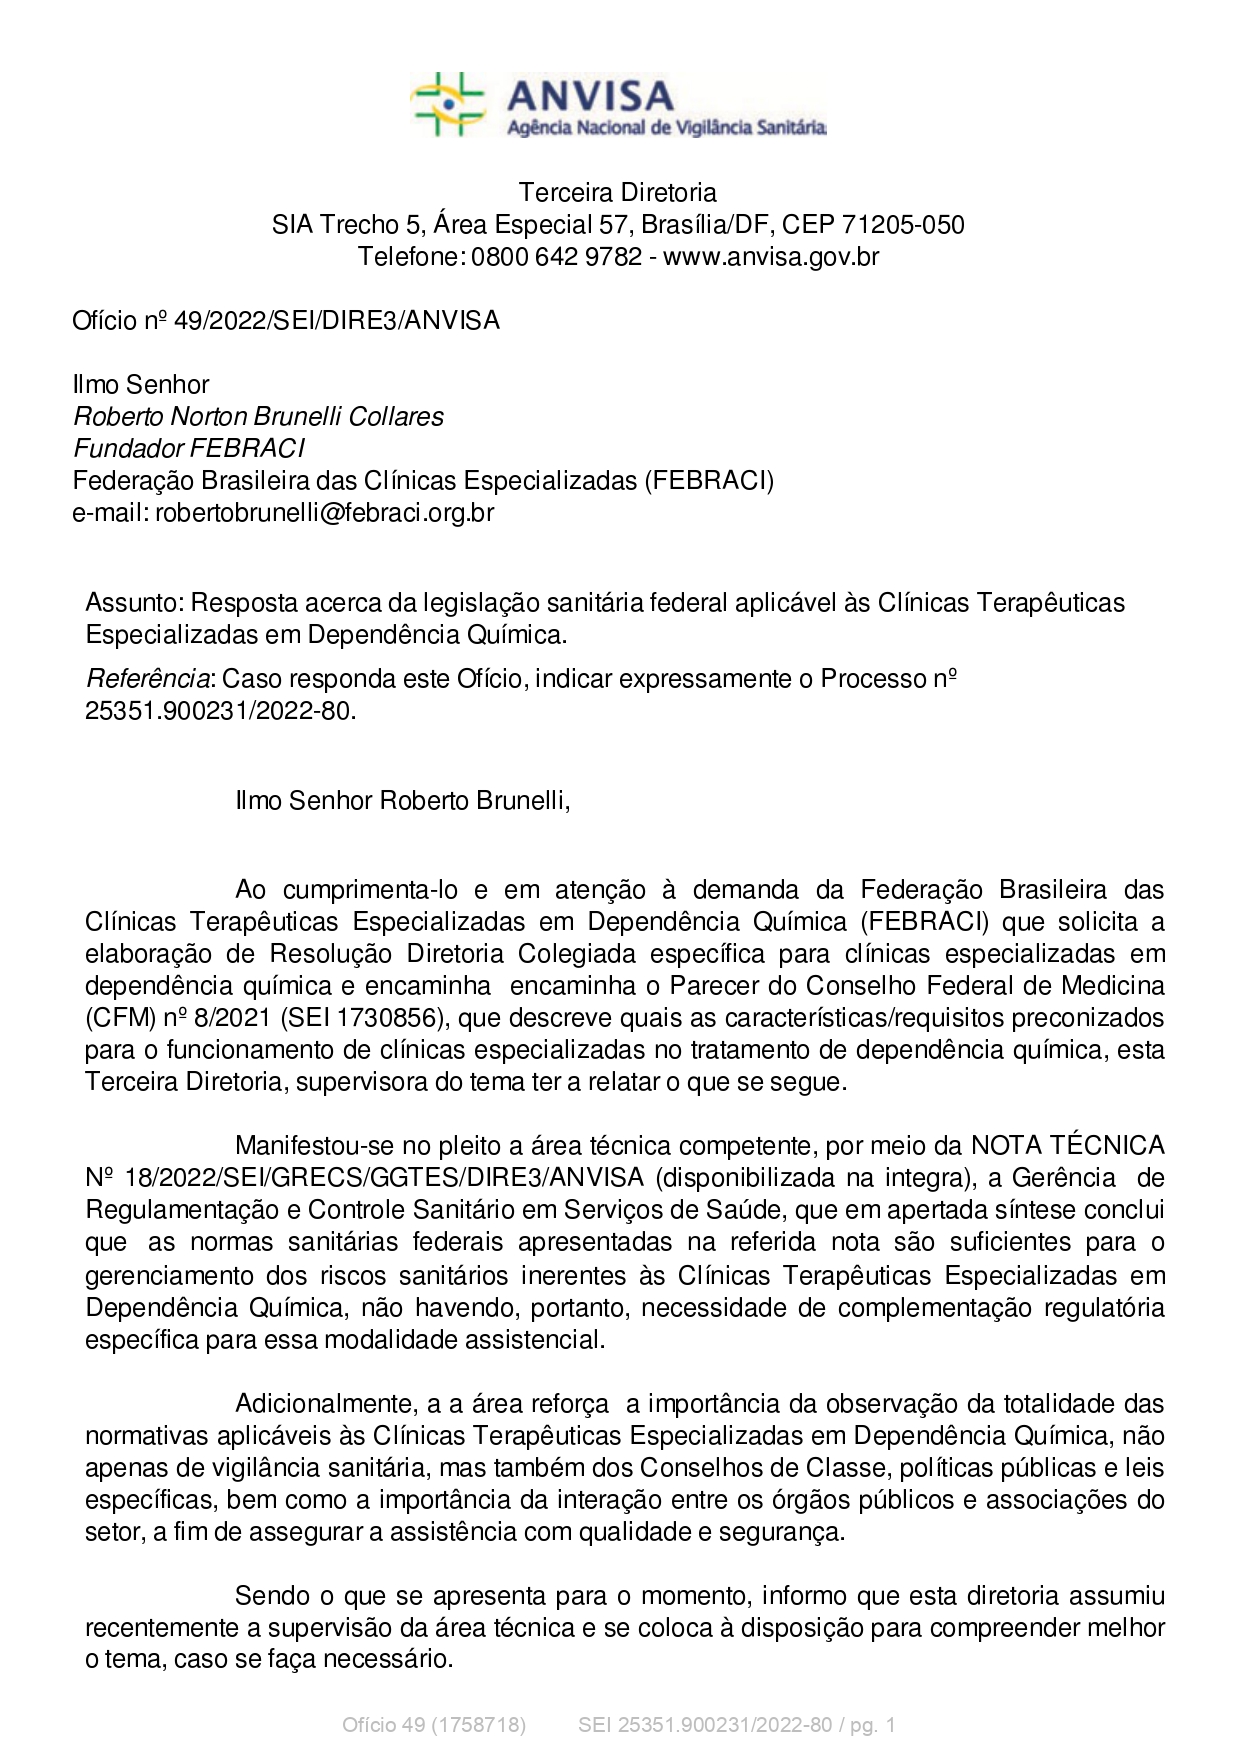 Of. 49-2022 - FEBRACI (Resposta acerca da legislação sanitária federal aplicável às Clínicas Terapêuticas)_page-0001